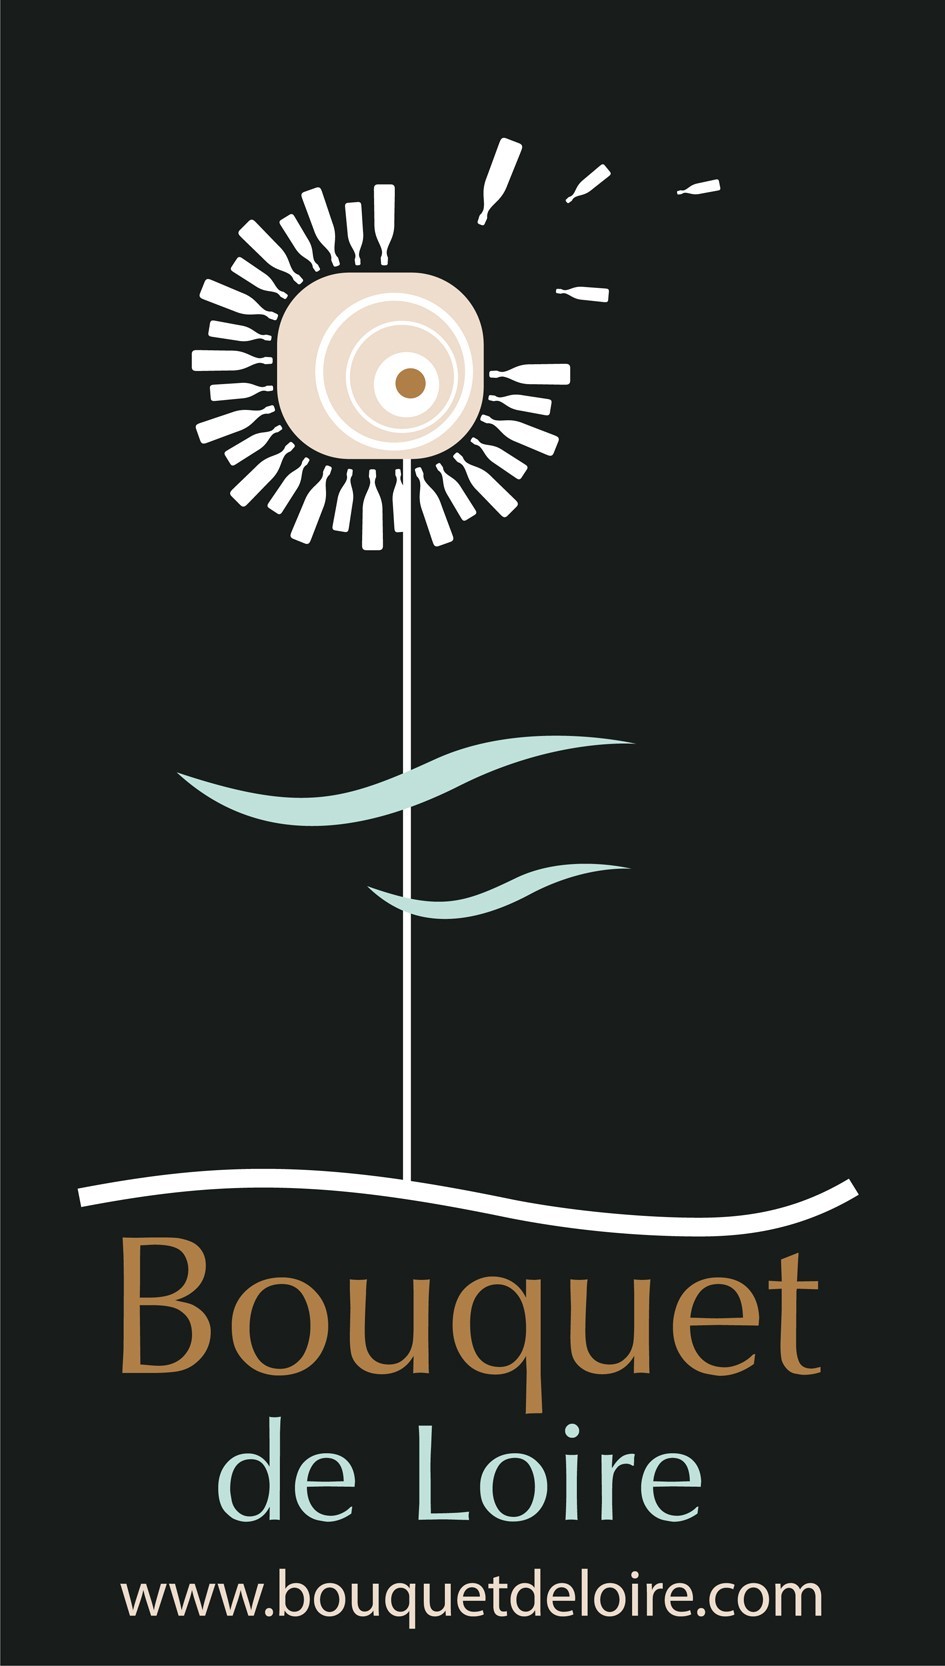 Bouquet de Loire